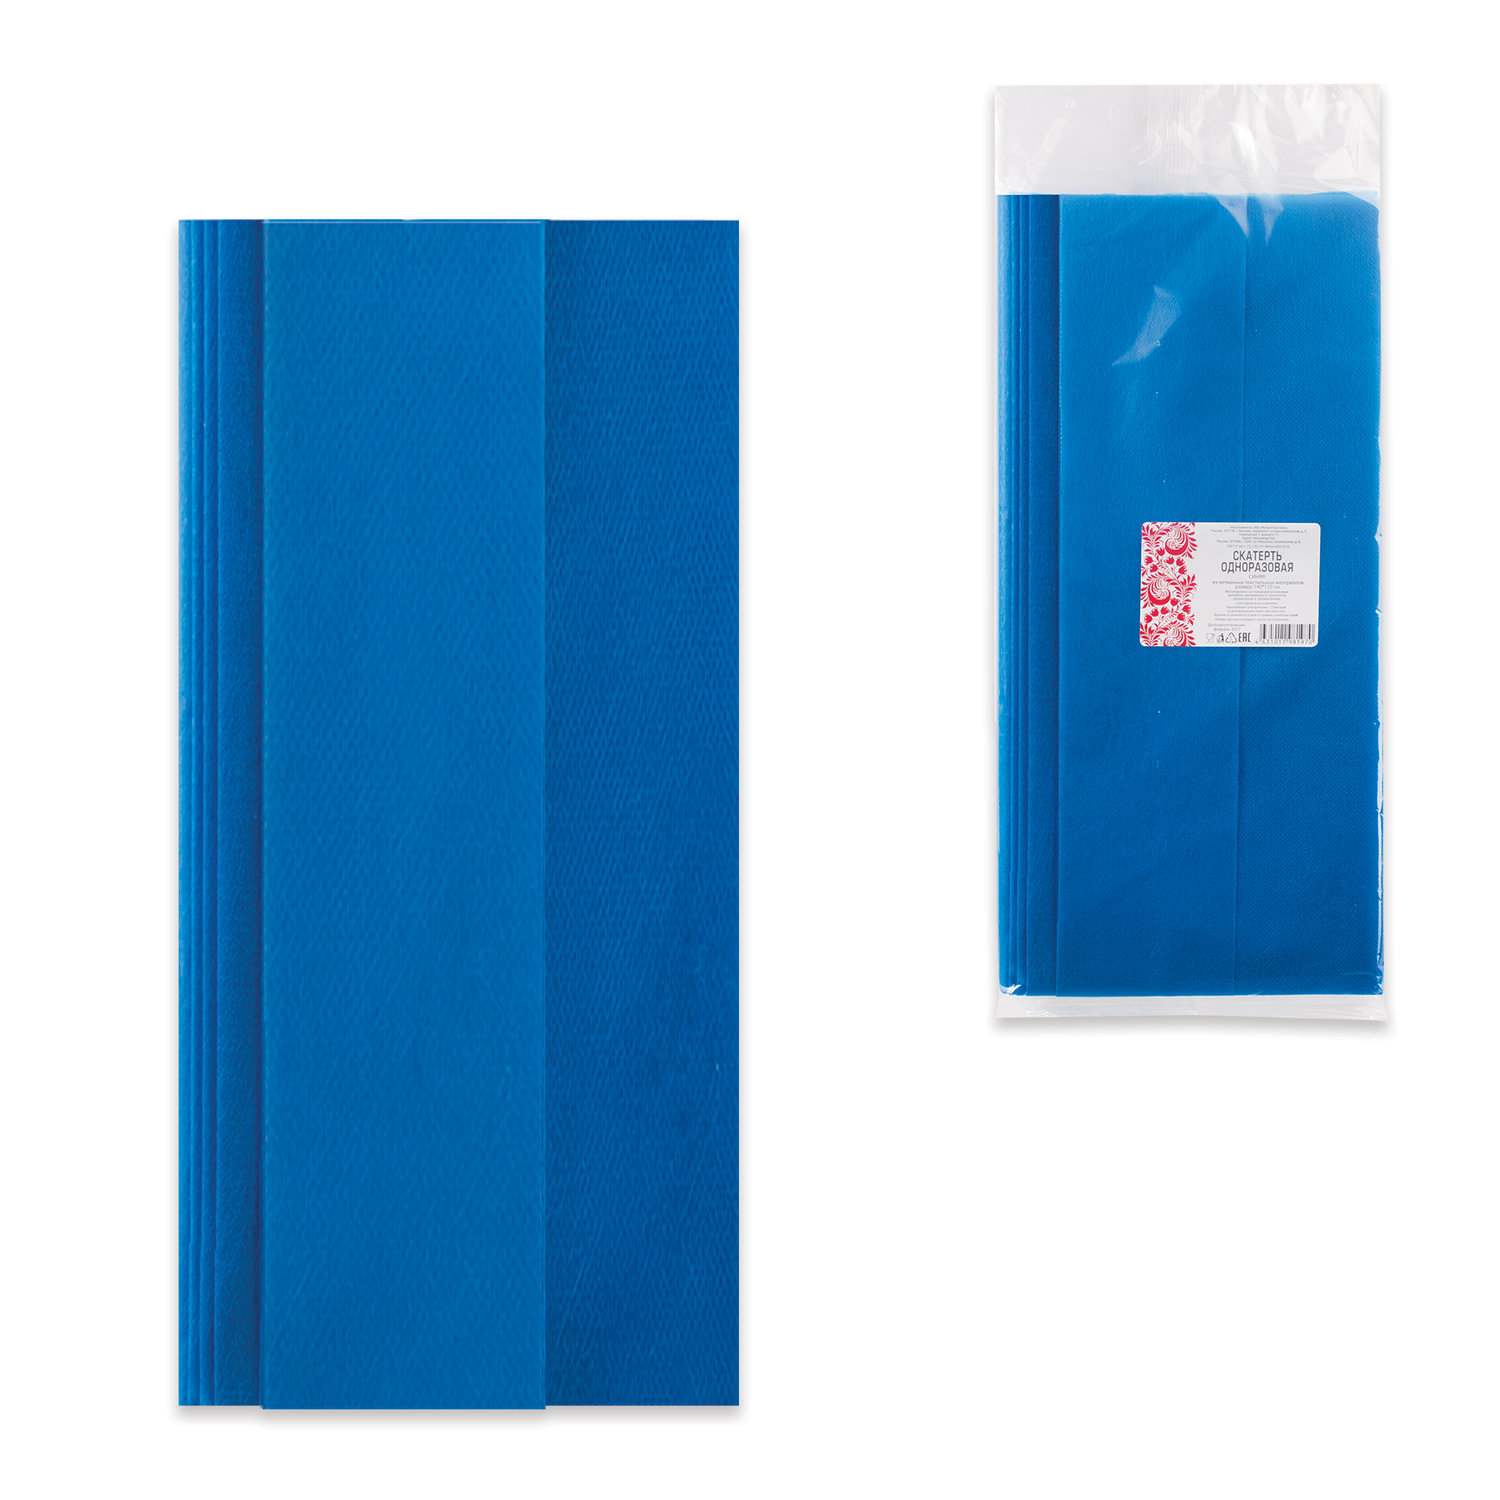 Скатерть одноразовая из нетканого материала спанбонд 140х110 см, ИНТРОПЛАСТИКА, синяя, шк